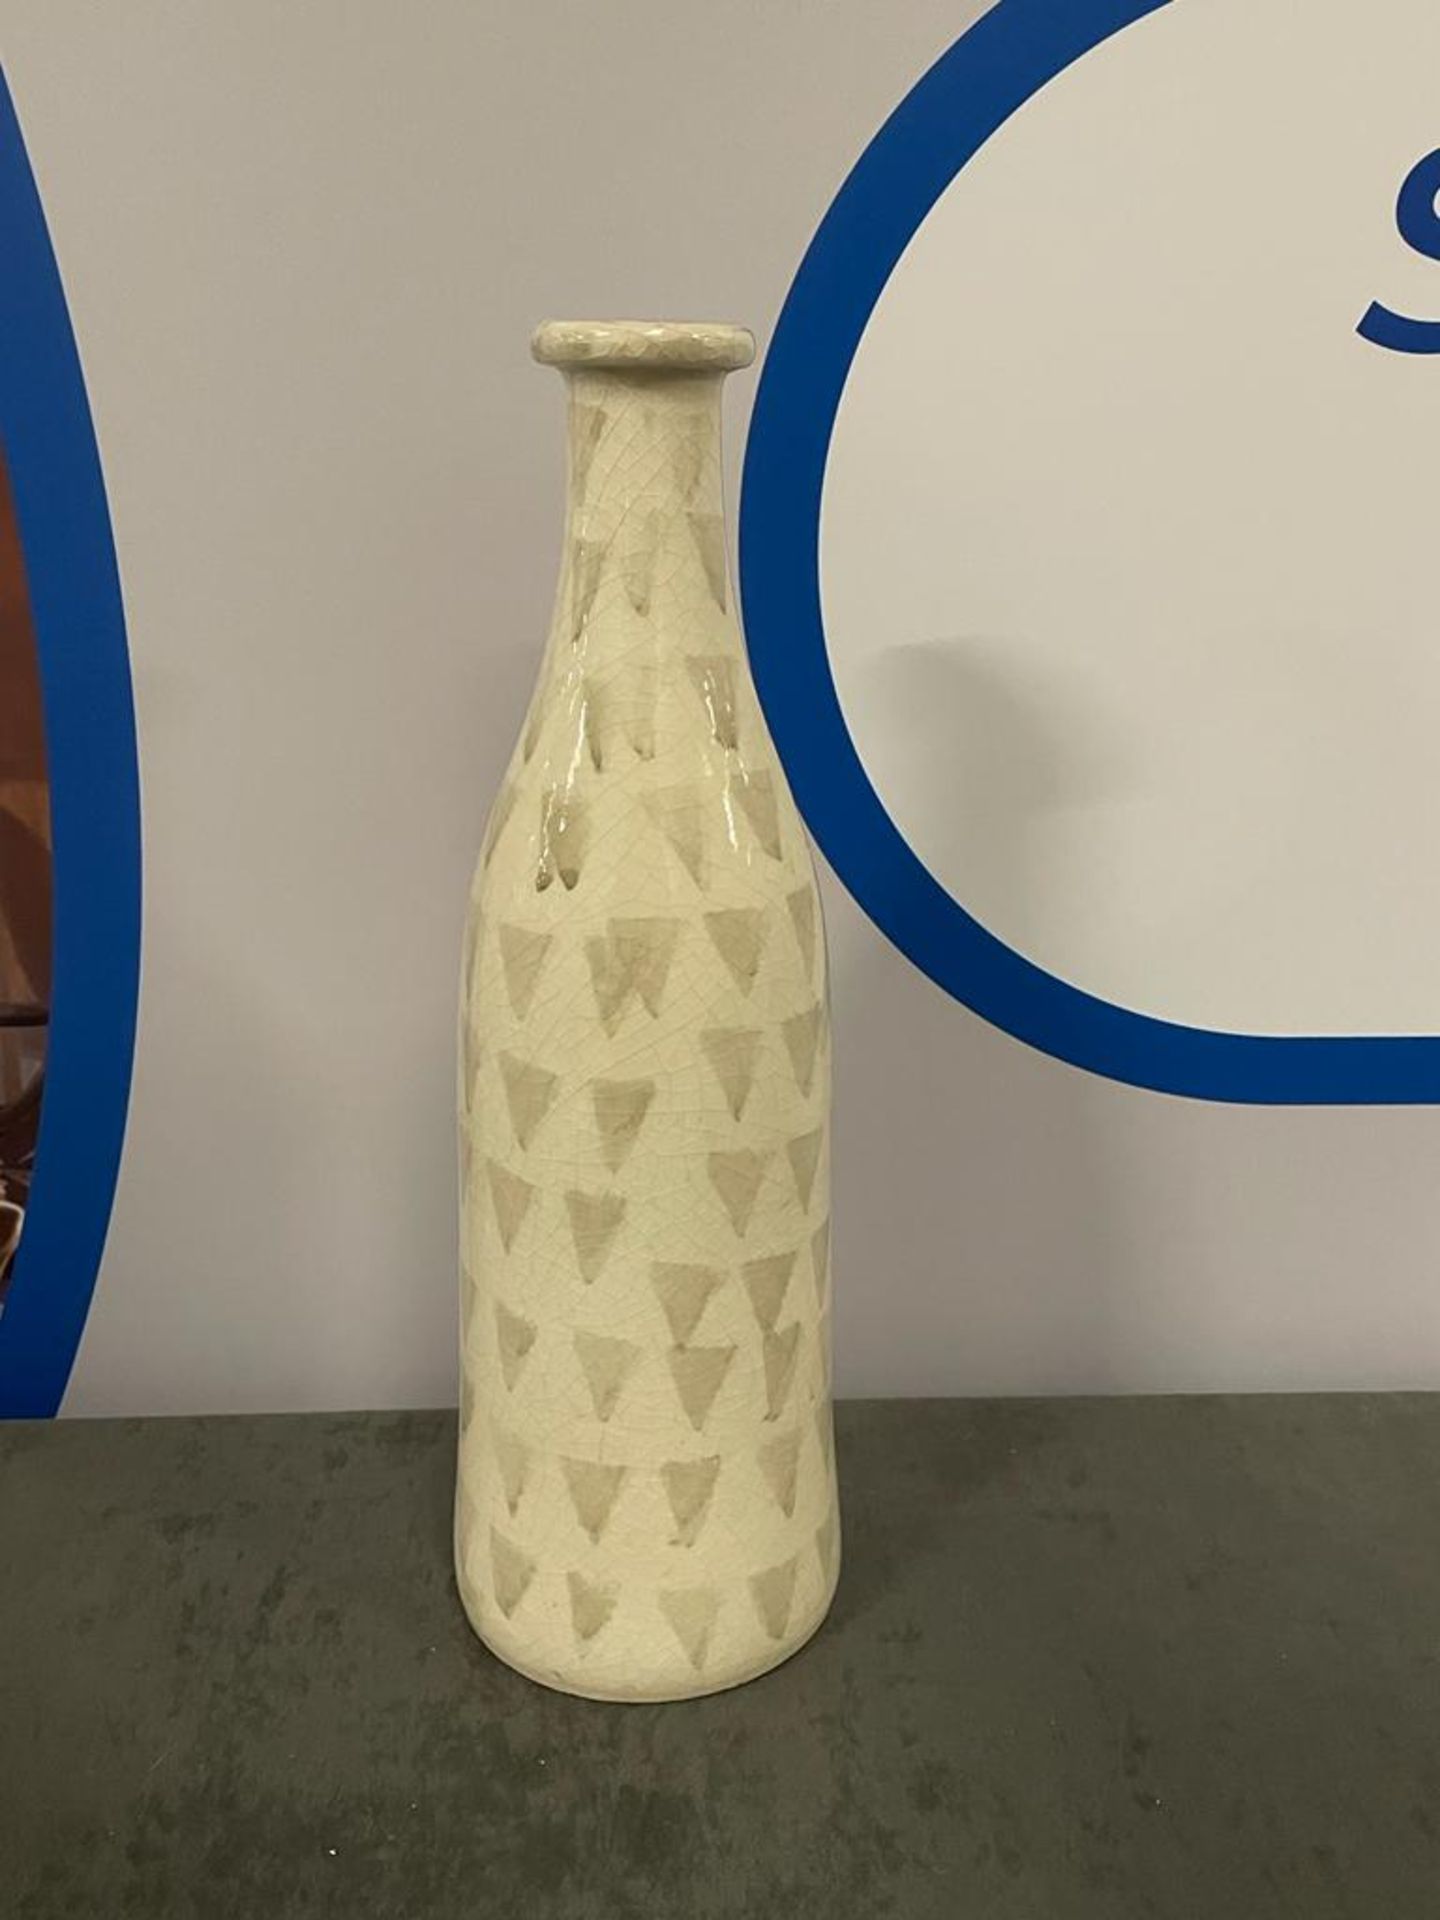 Handmade White Patterned Textured Bottle Ceramic Vase 40cn High ( CP1285)